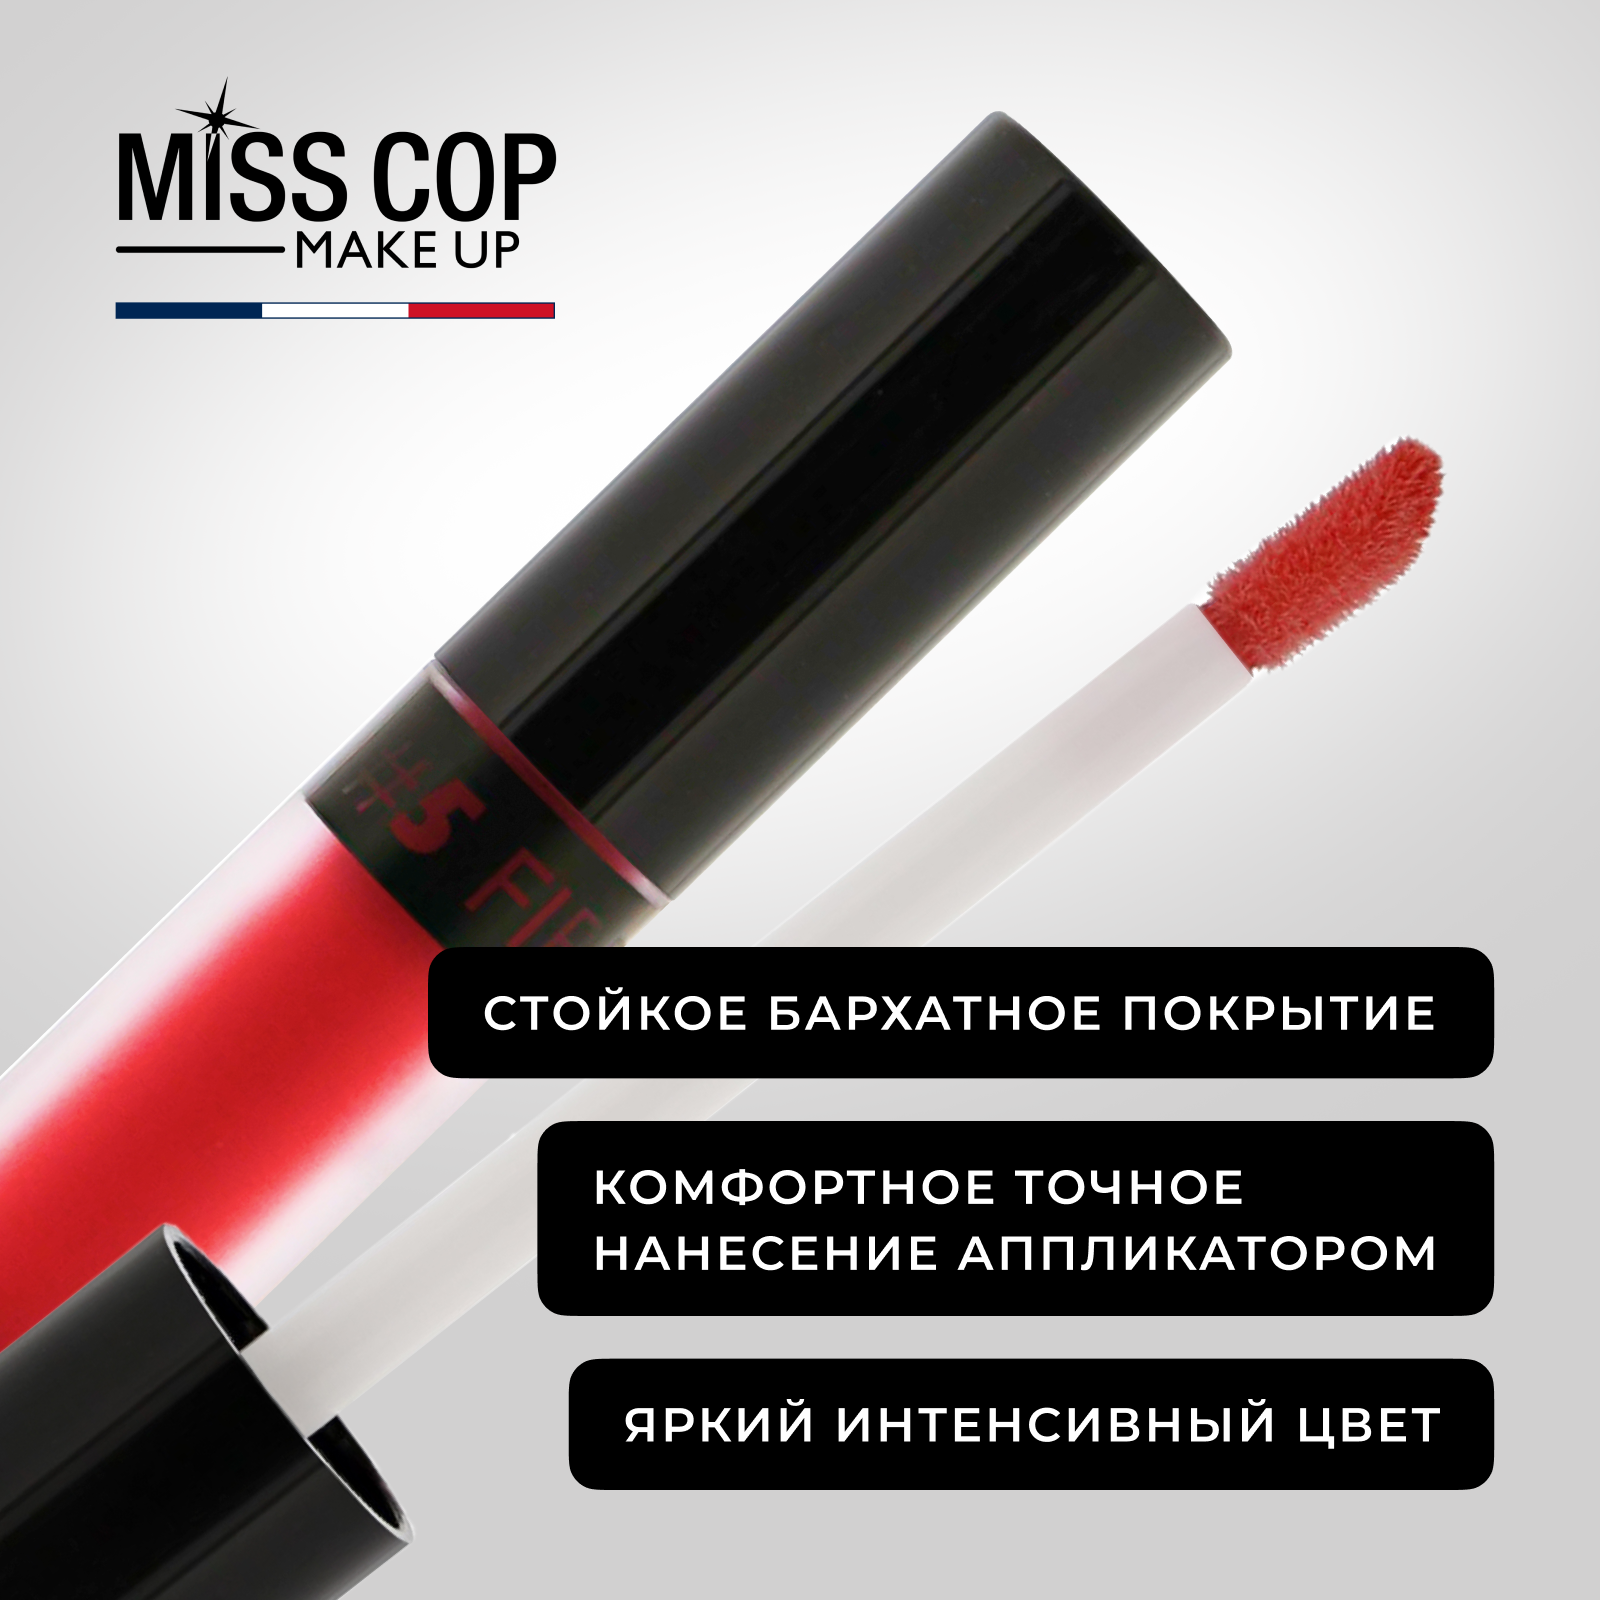 Жидкая губная помада Miss Cop матовая стойкая красная Франция цвет 05 Fire 2 мл - фото 5